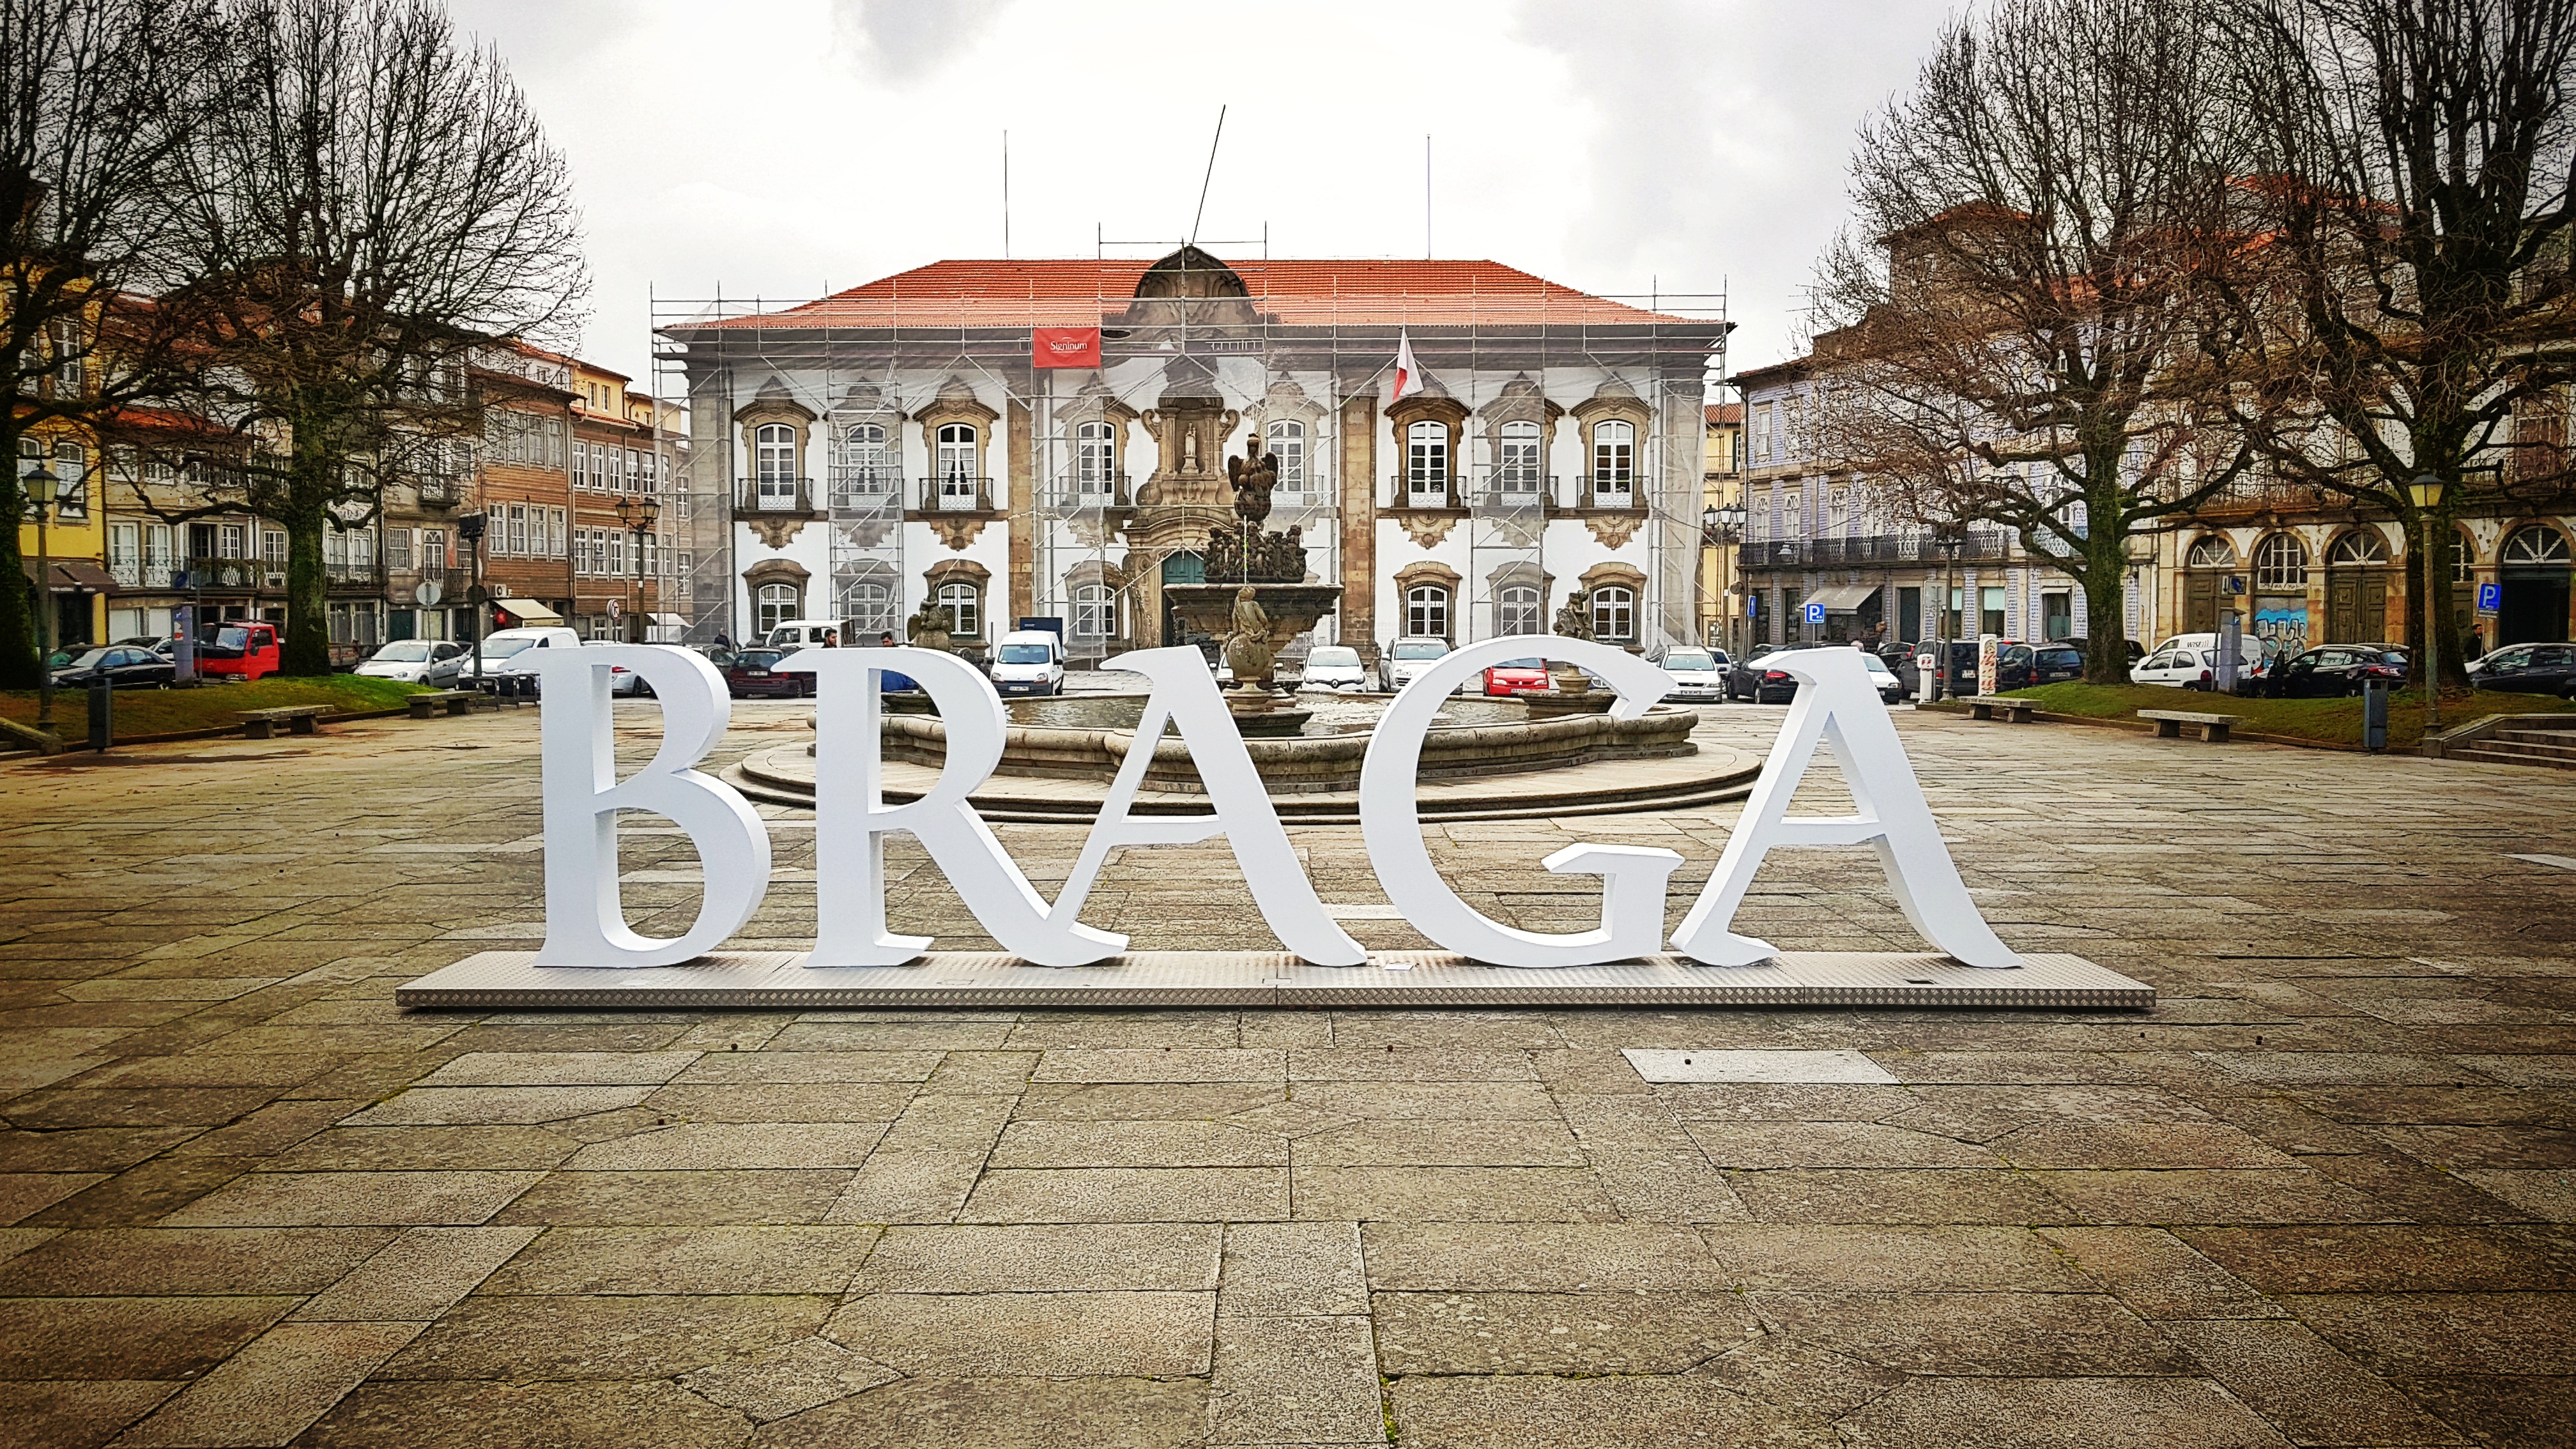 Portugal 2018 – urban architecture75